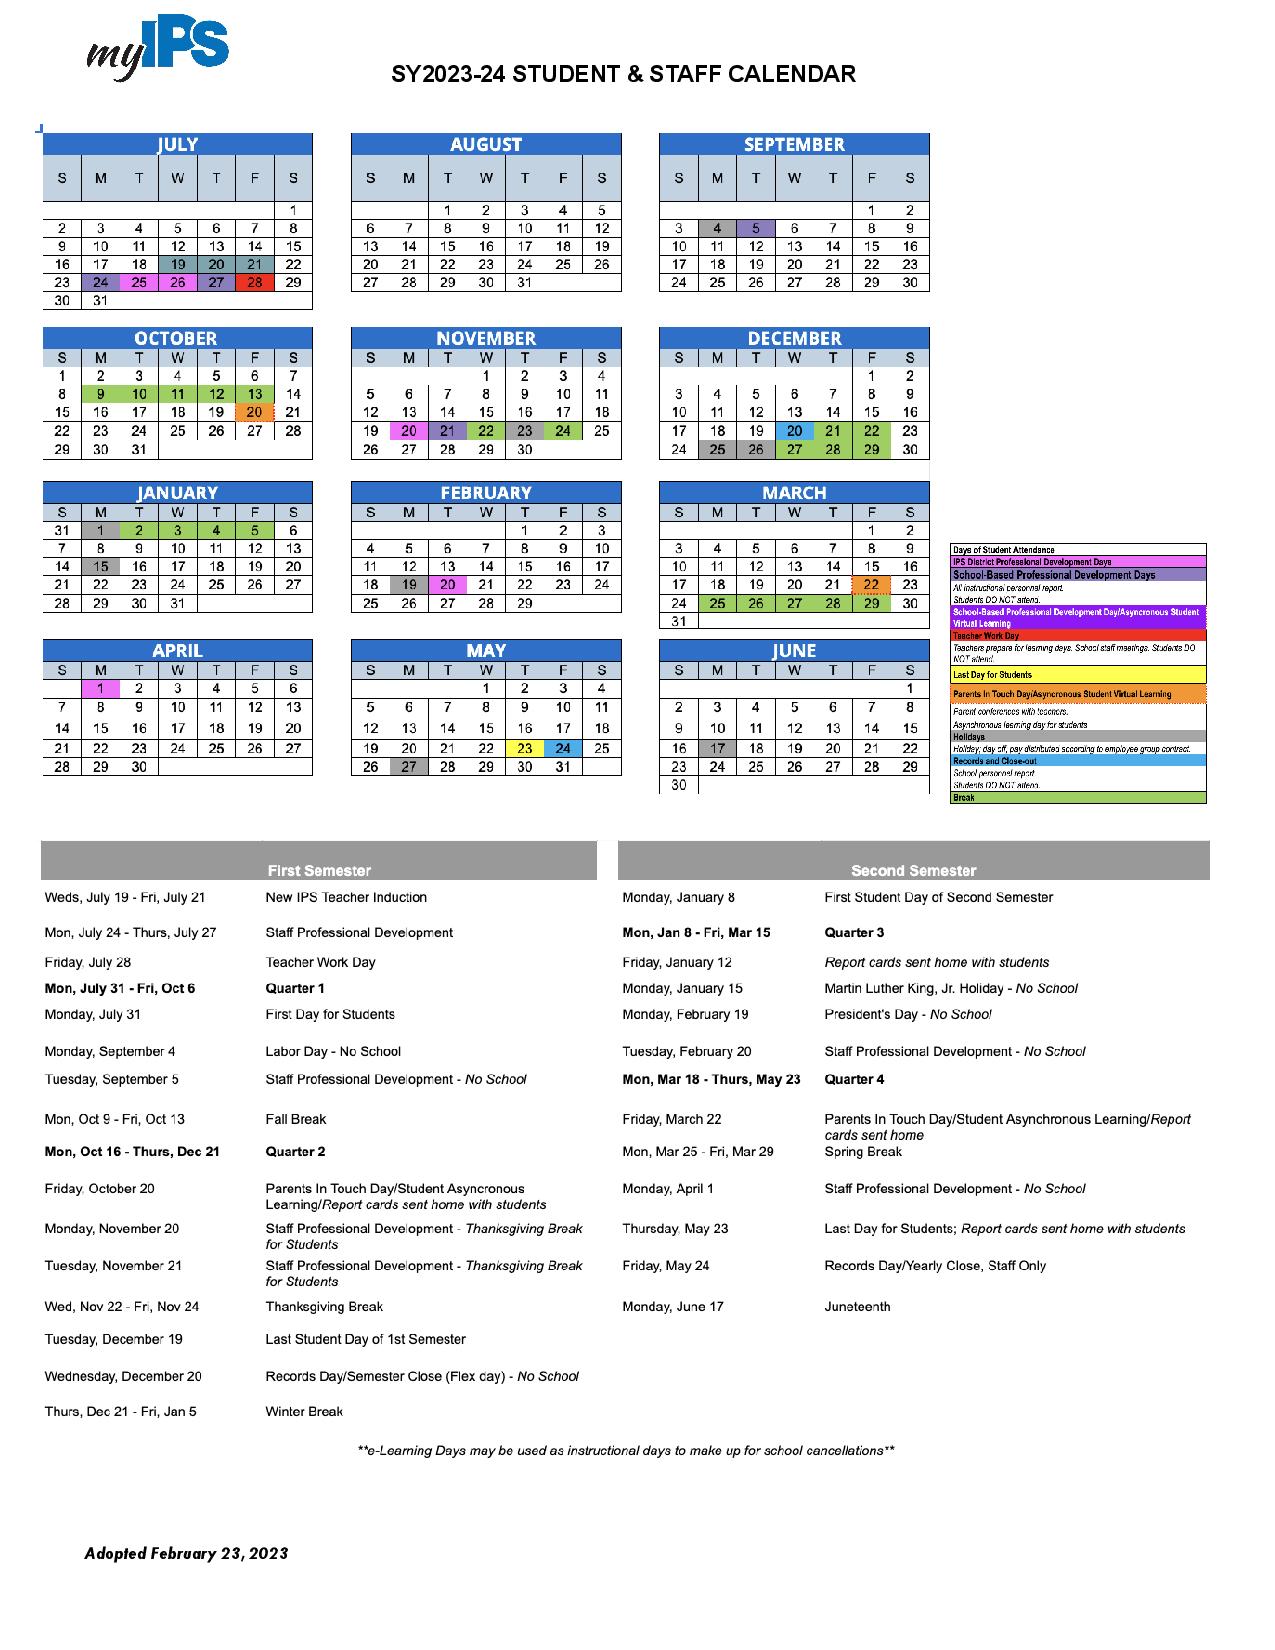 Indianapolis Public Schools Calendar Holidays 20232024 PDF